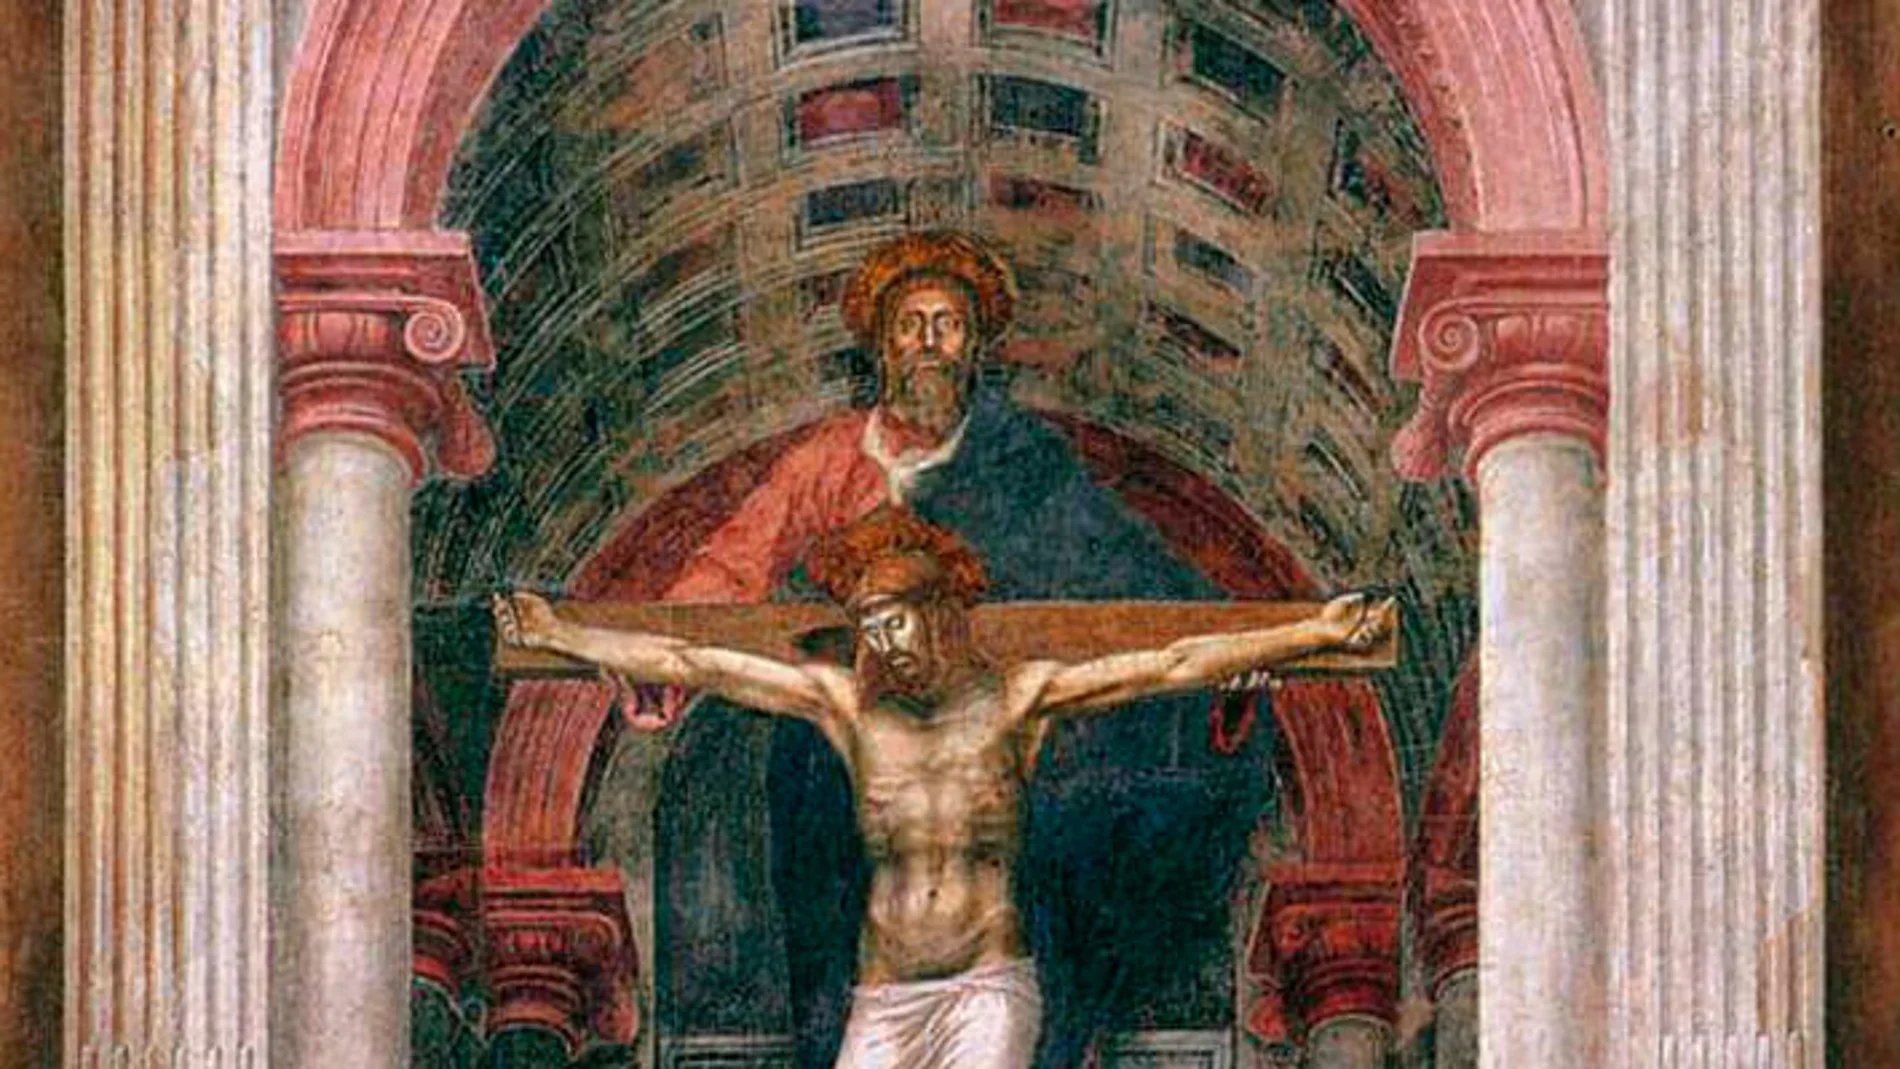  La Santísima Trinidad, de Masaccio. Iglesia Santa María la Novella, Florencia, Italia